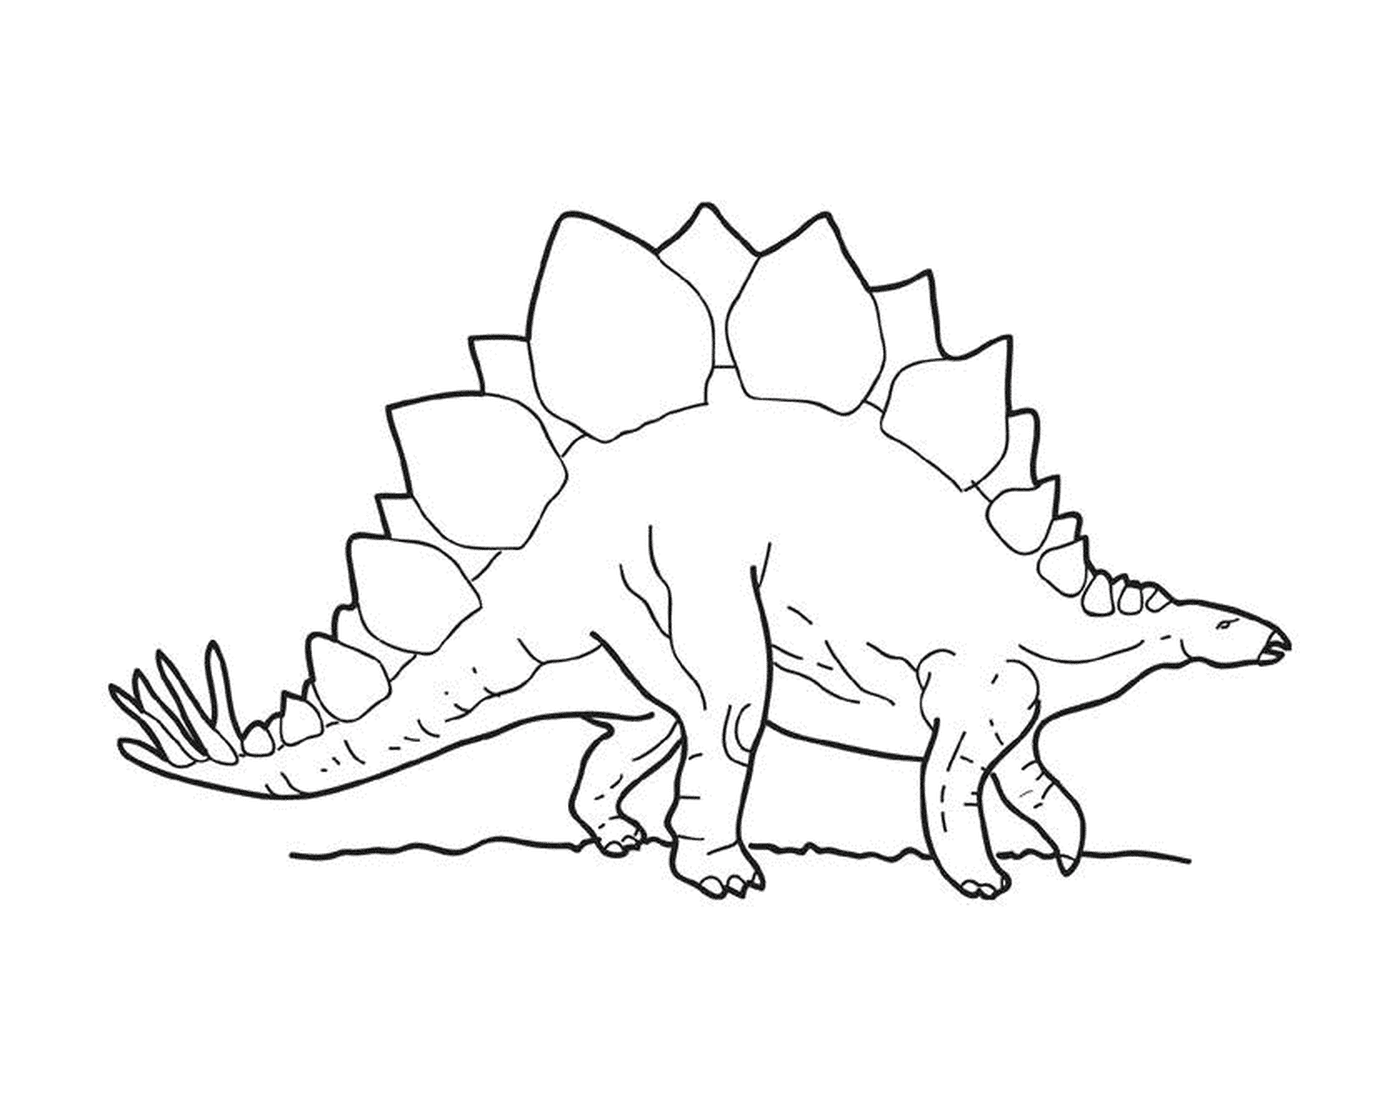  Um stegosaurus de pé 